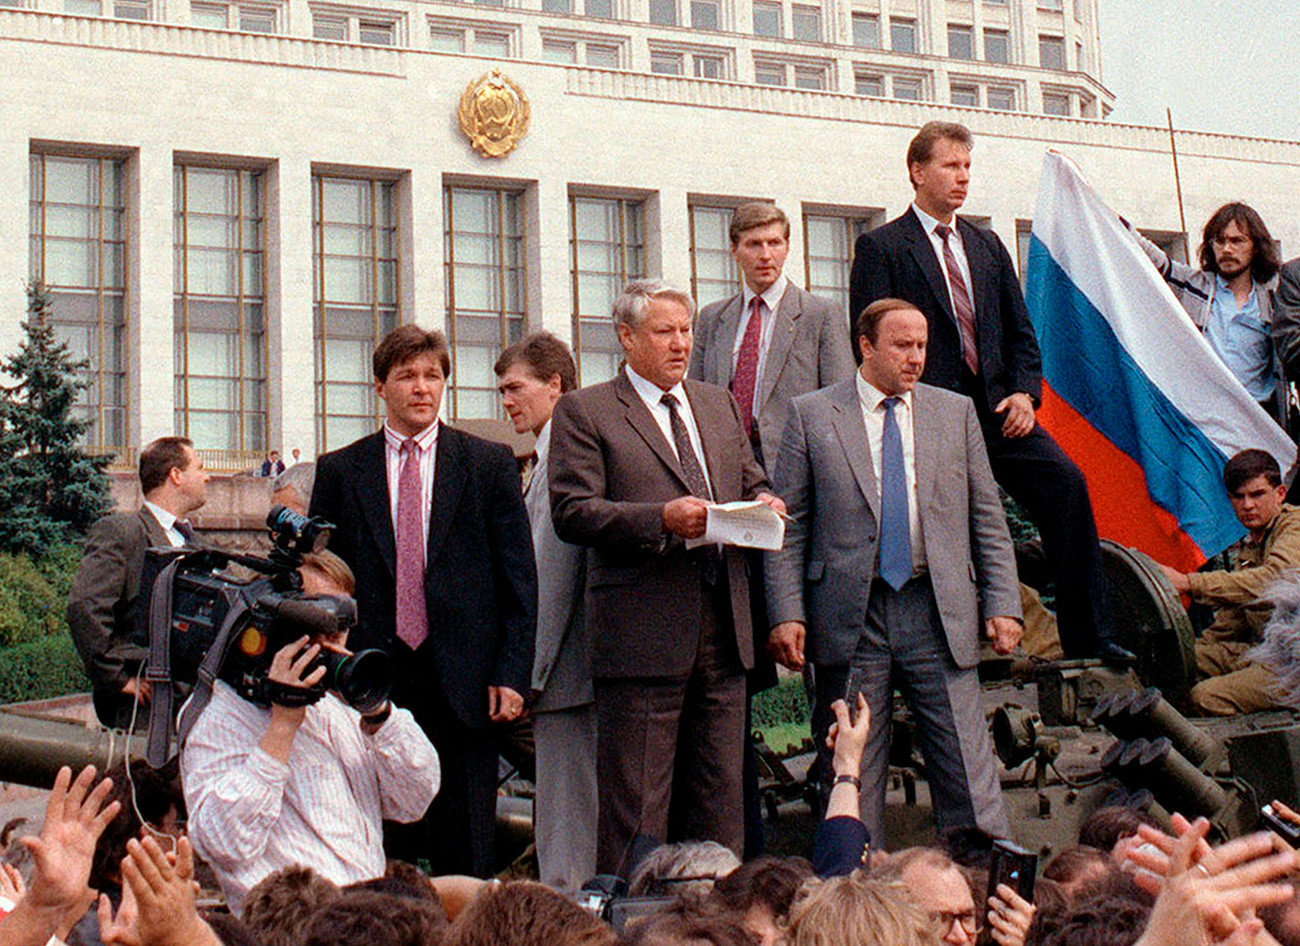 Ruski predsjednik Boris Jeljcin drži govor na oklopnom vozilu ispred zgrade vlade u kolovozu 1991. godine.